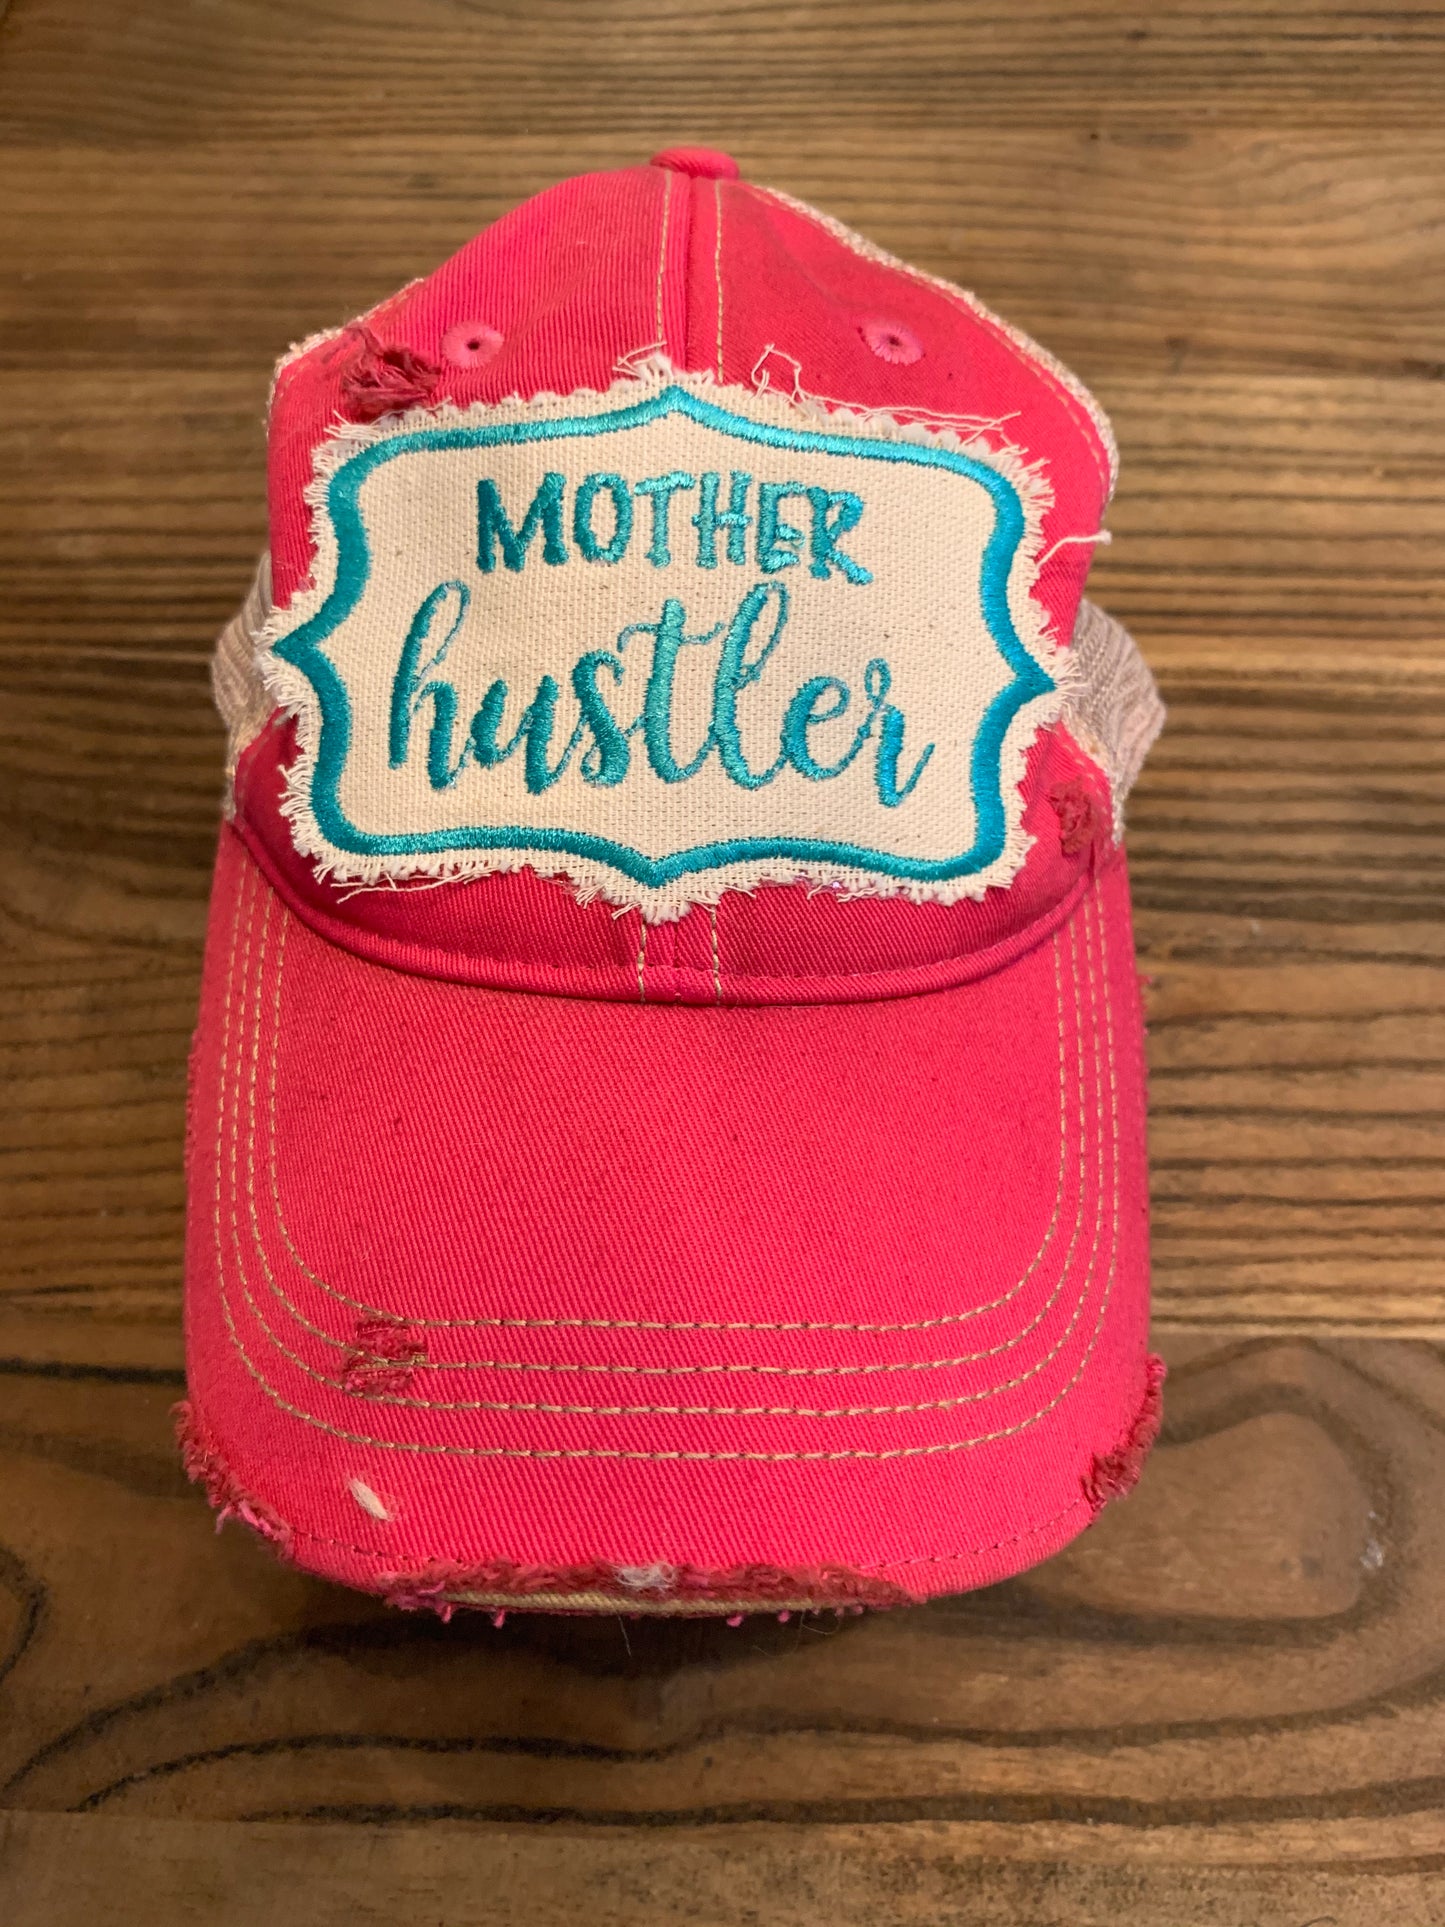 Mother hustler on hot pink hat